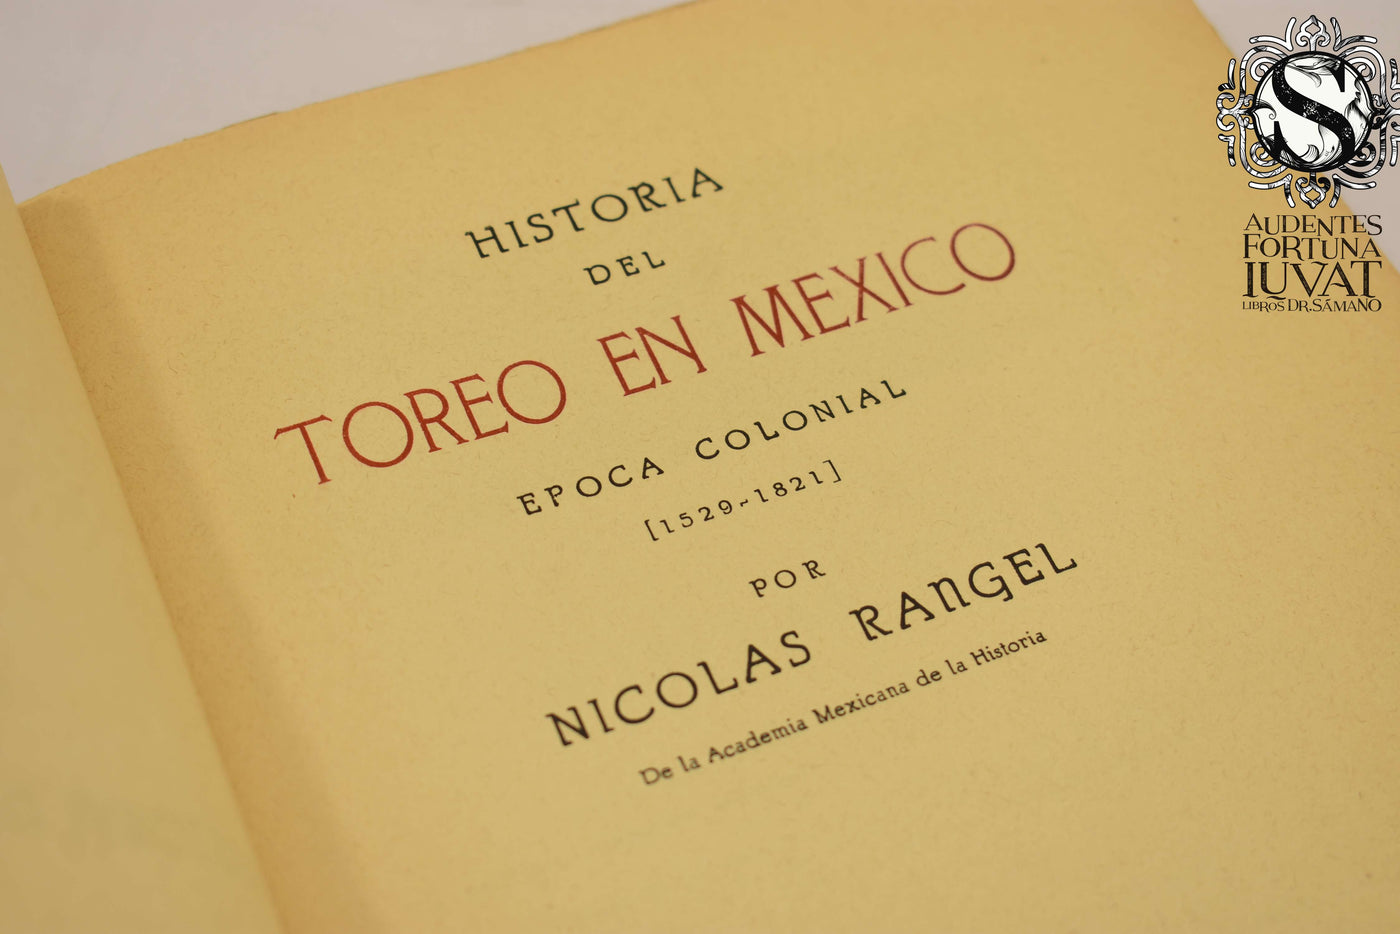 HISTORIA DEL TOREO EN MÉXICO -  Nicolás Rangel